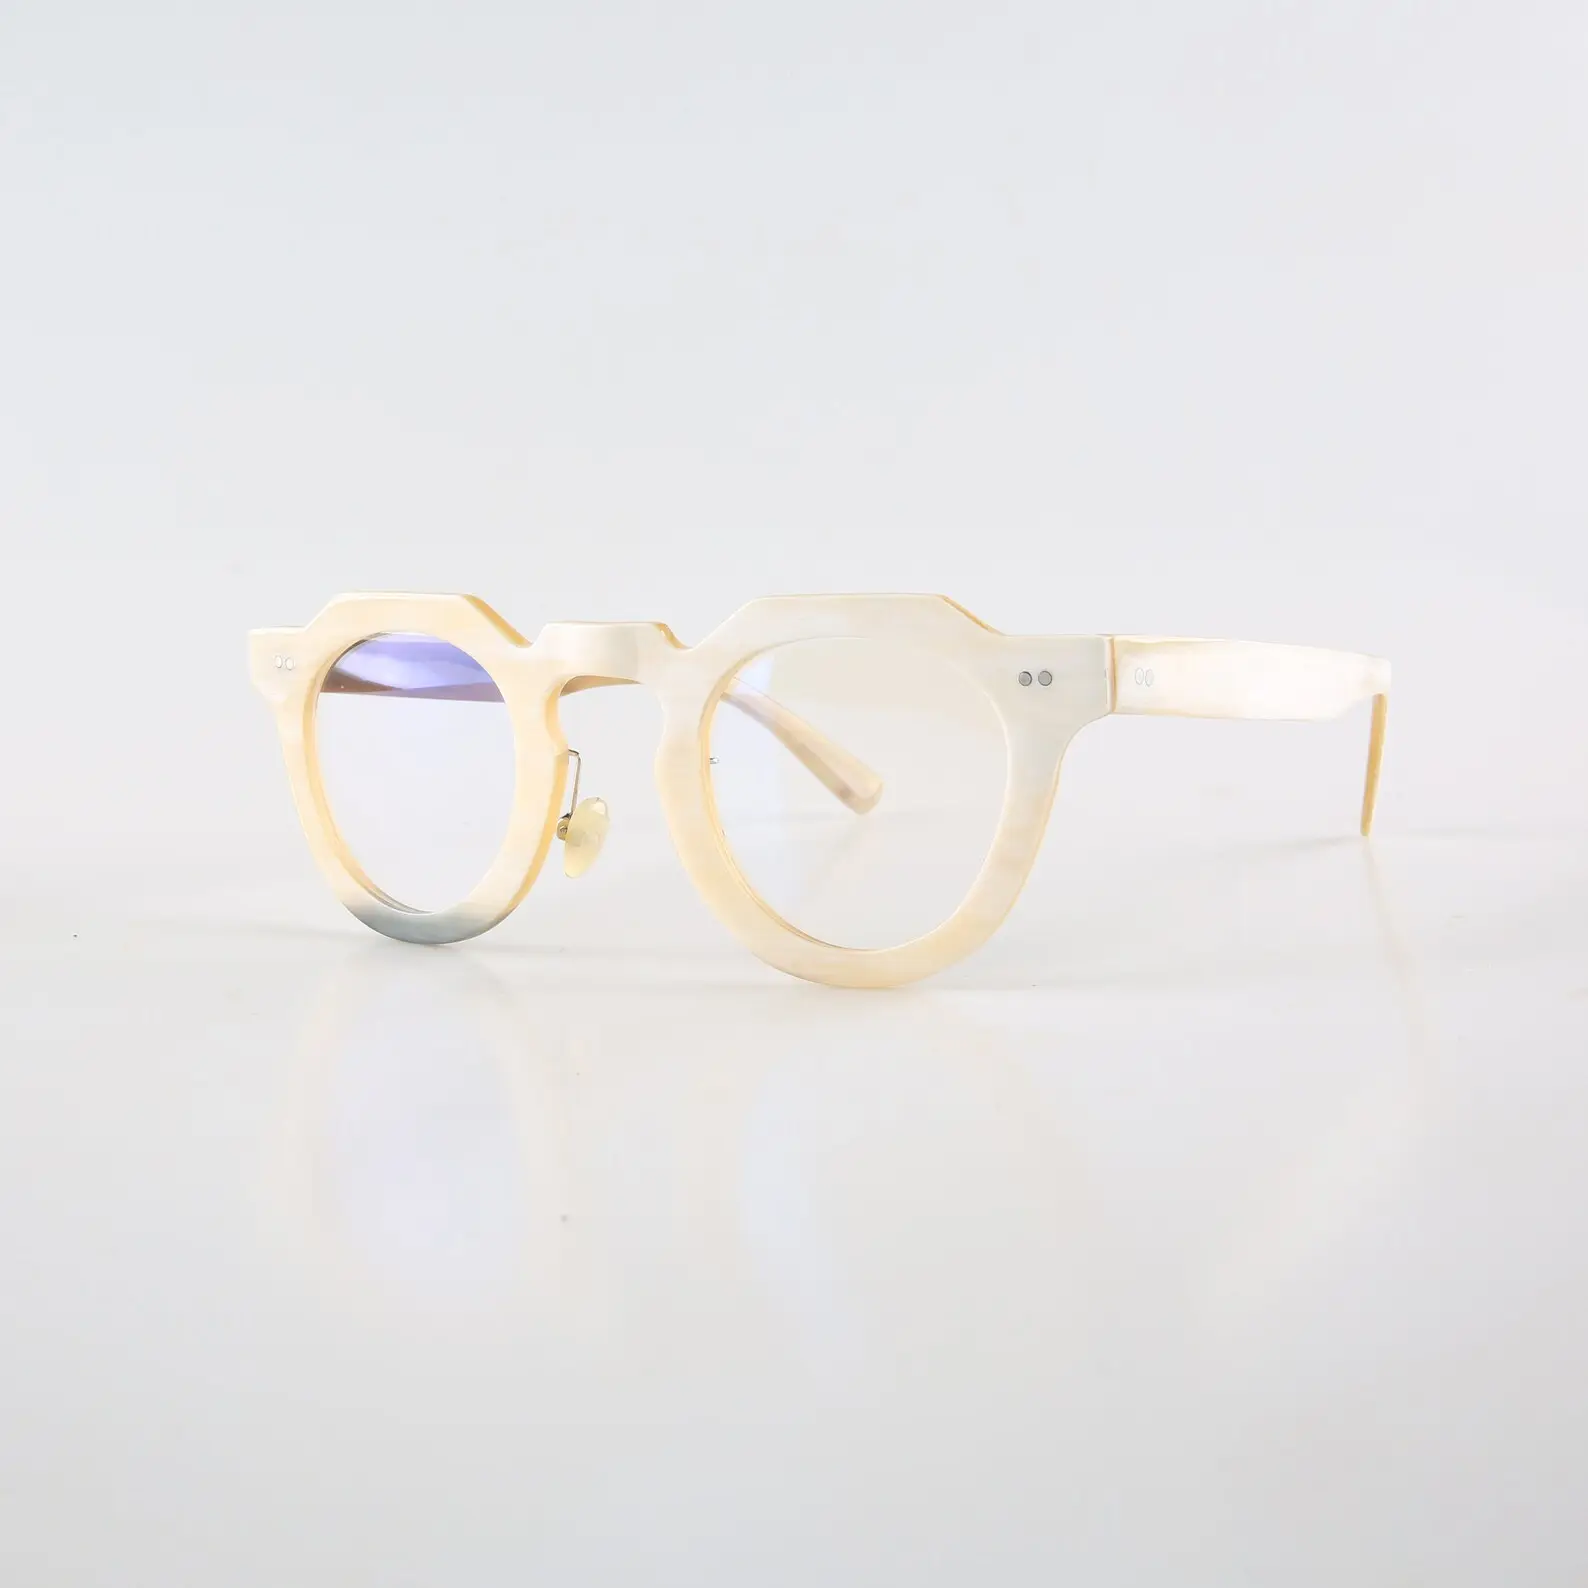 Erkekler kadınlar için gözlük çerçeveleri Retro benzersiz el yapımı hakiki doğal boynuz okuma perçinler gözlük çerçeve temizle lüks gözlük